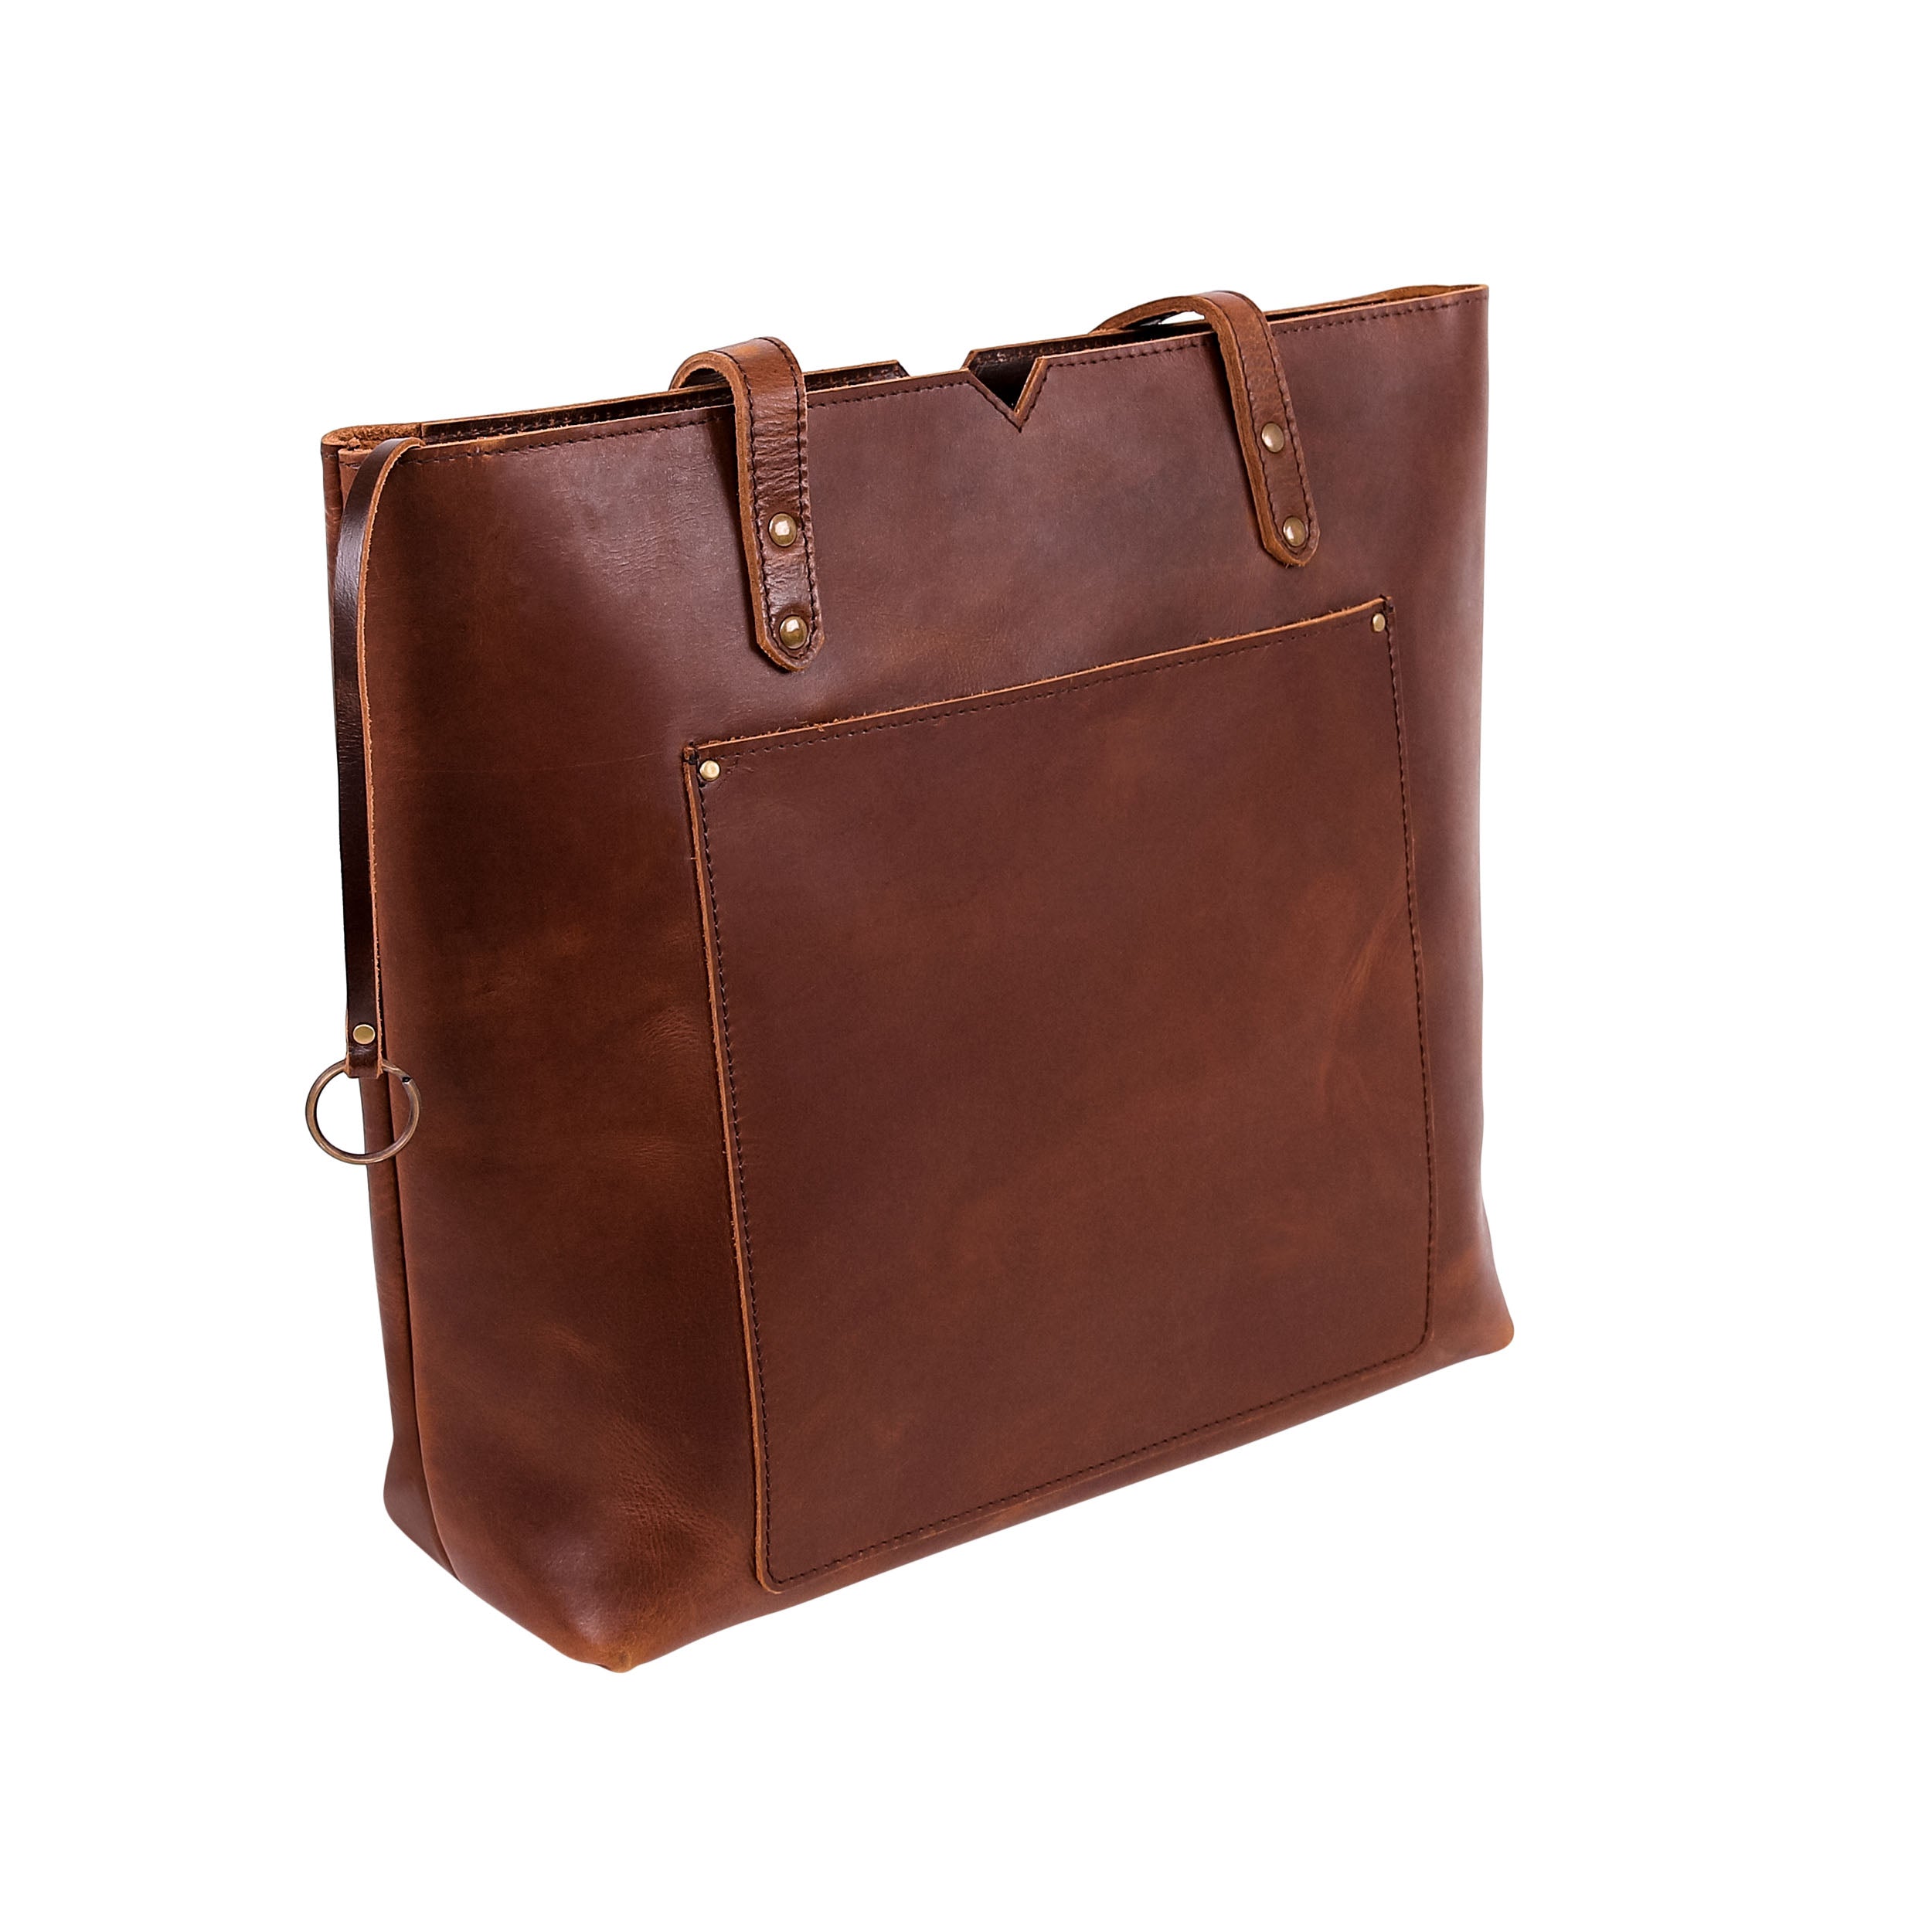 Leather Tote Bag 9918 - Medium Brown